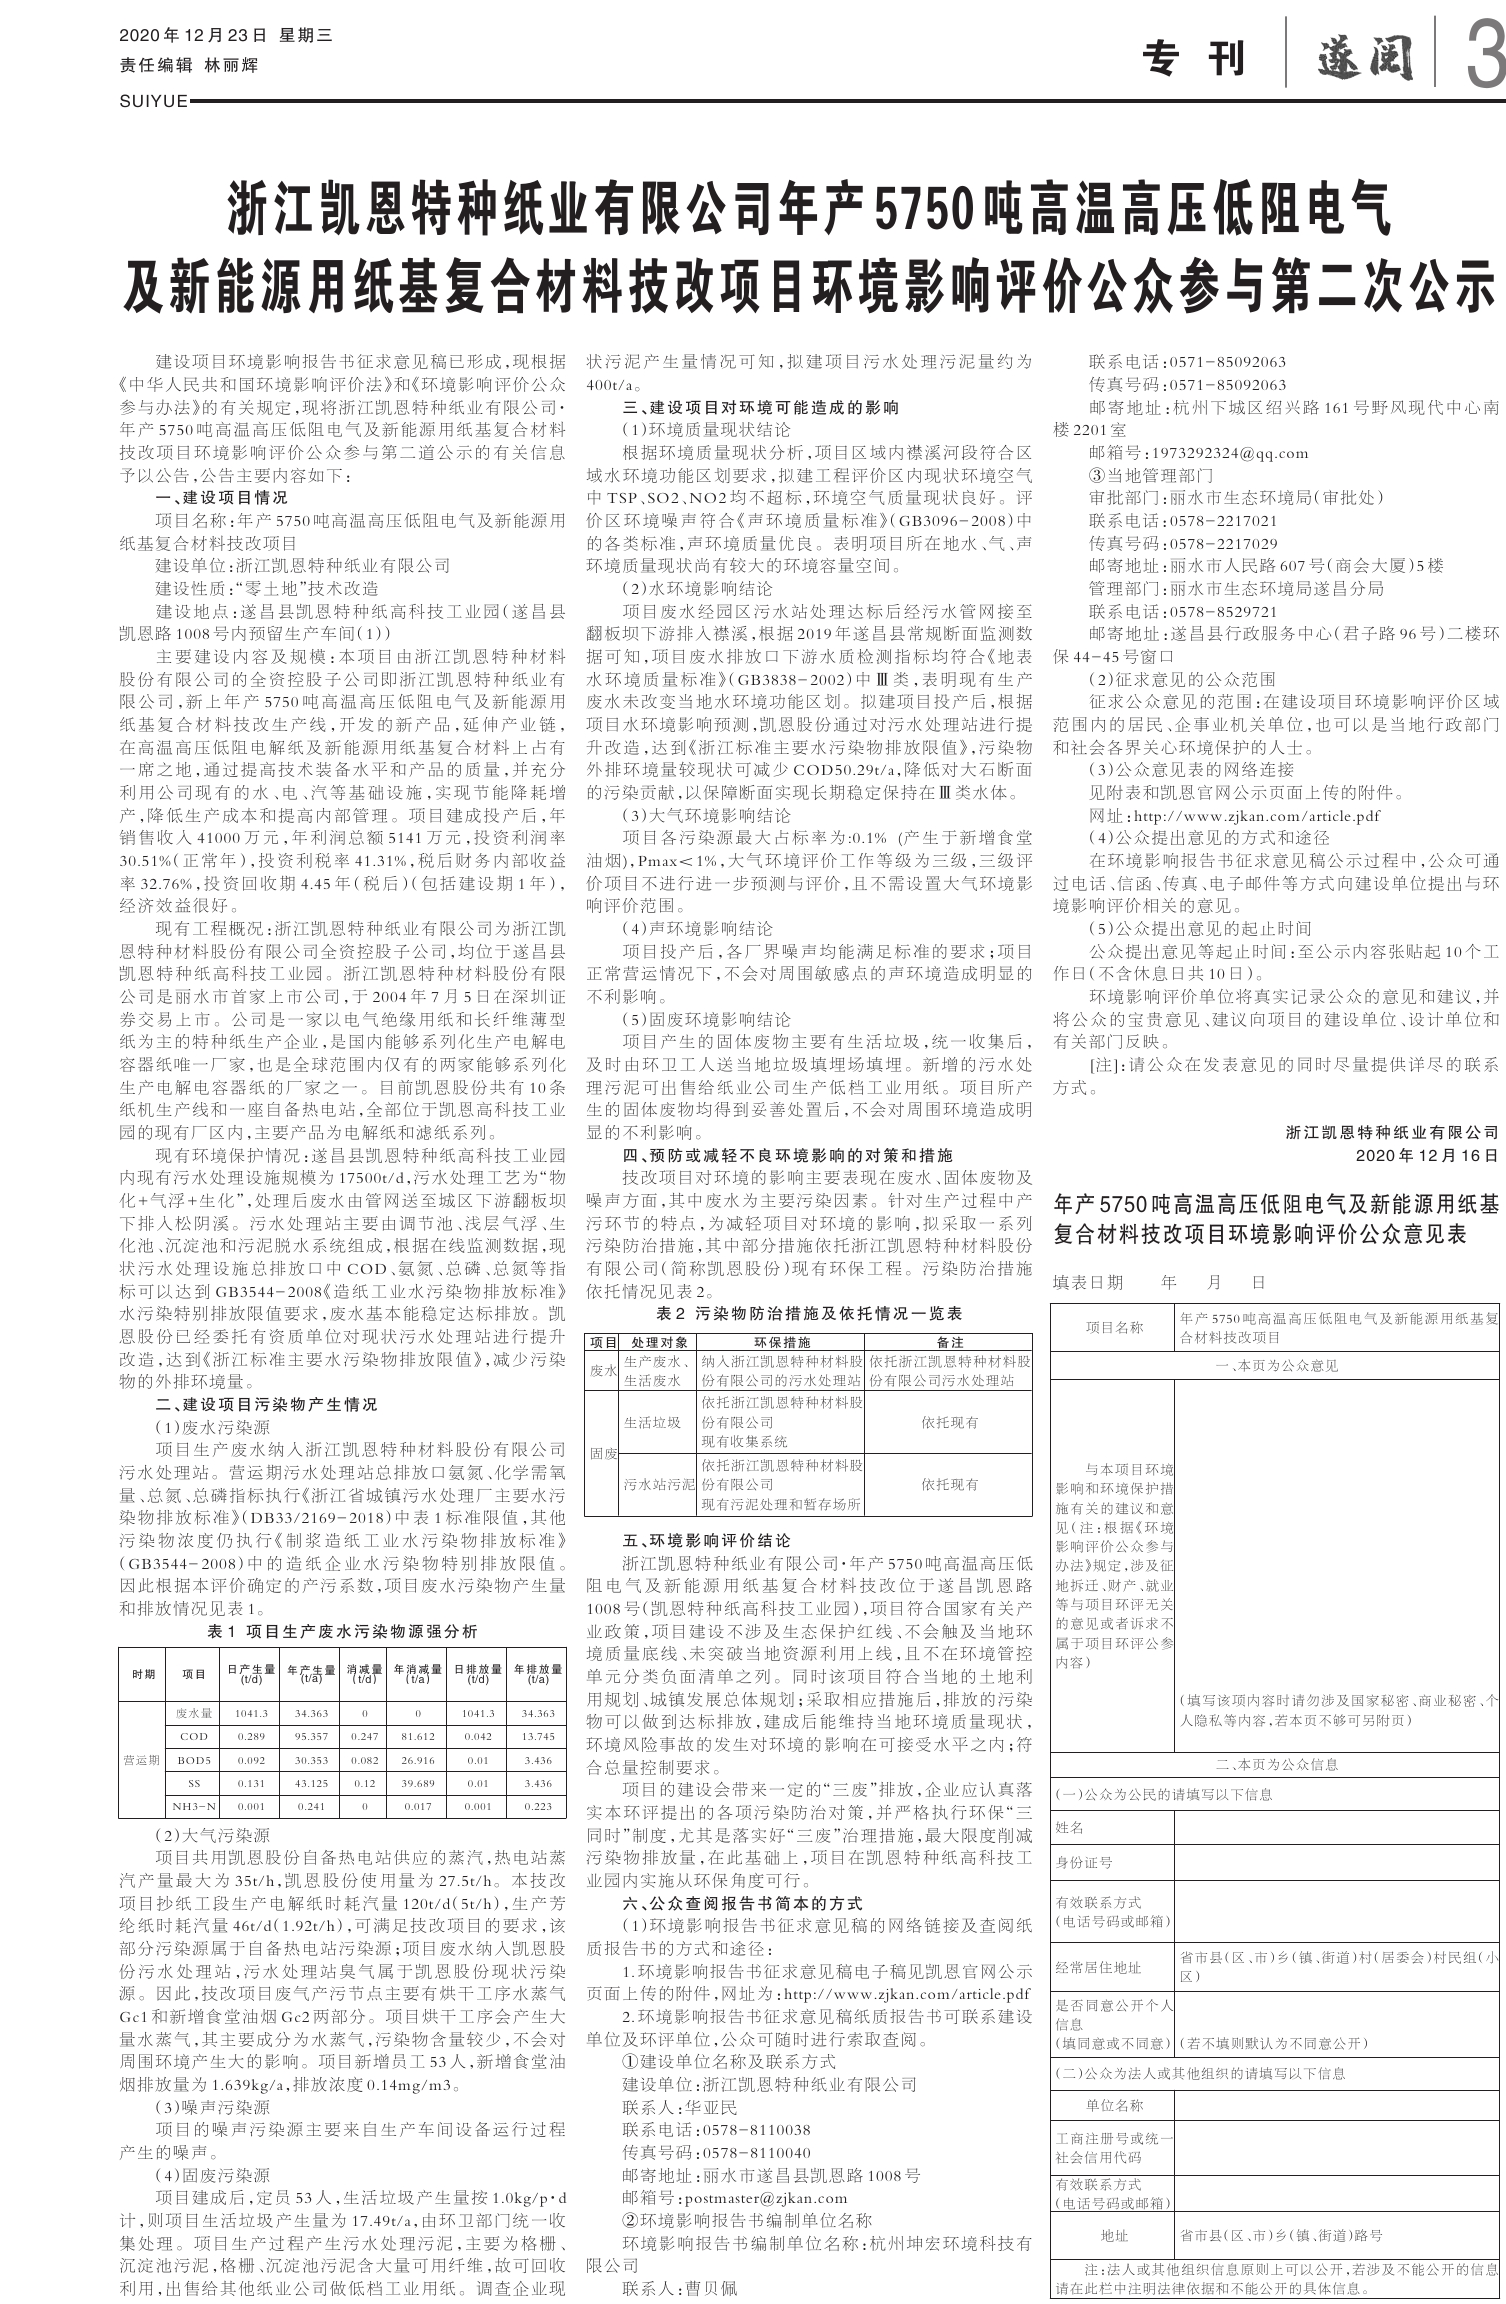 仙居县经济开发区_台州市产业园区招商 - 中工招商网